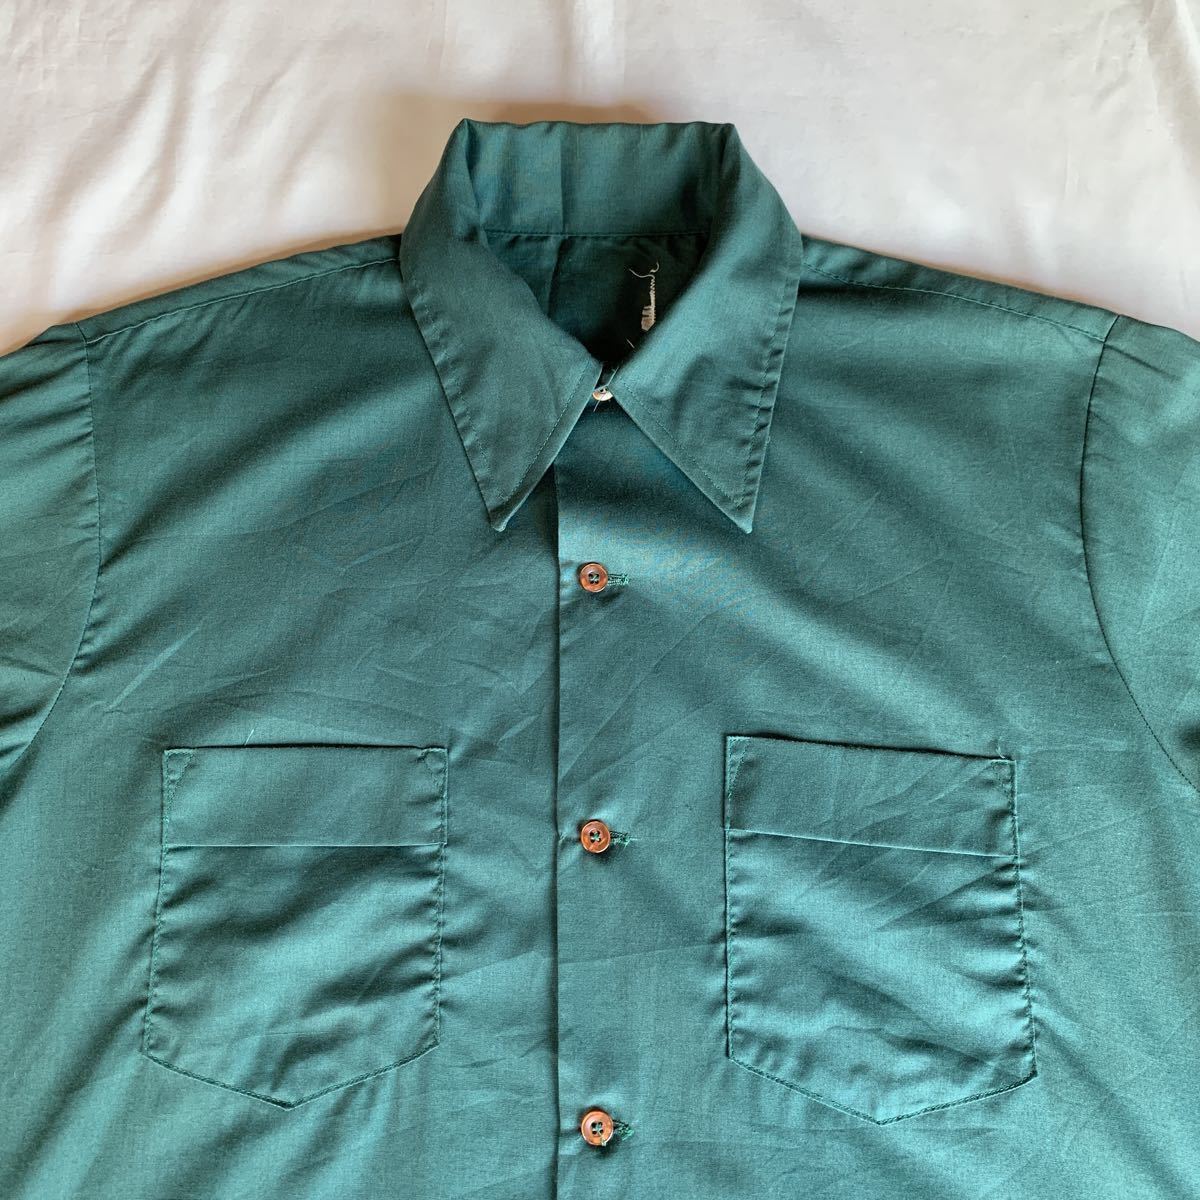 70s OPEN COLLAR SHIRT ヴィンテージ ビンテージ オープンカラーシャツ 開襟シャツ ボックスシャツ 無地シャツ GREEN 緑 60s 送料無料_画像4